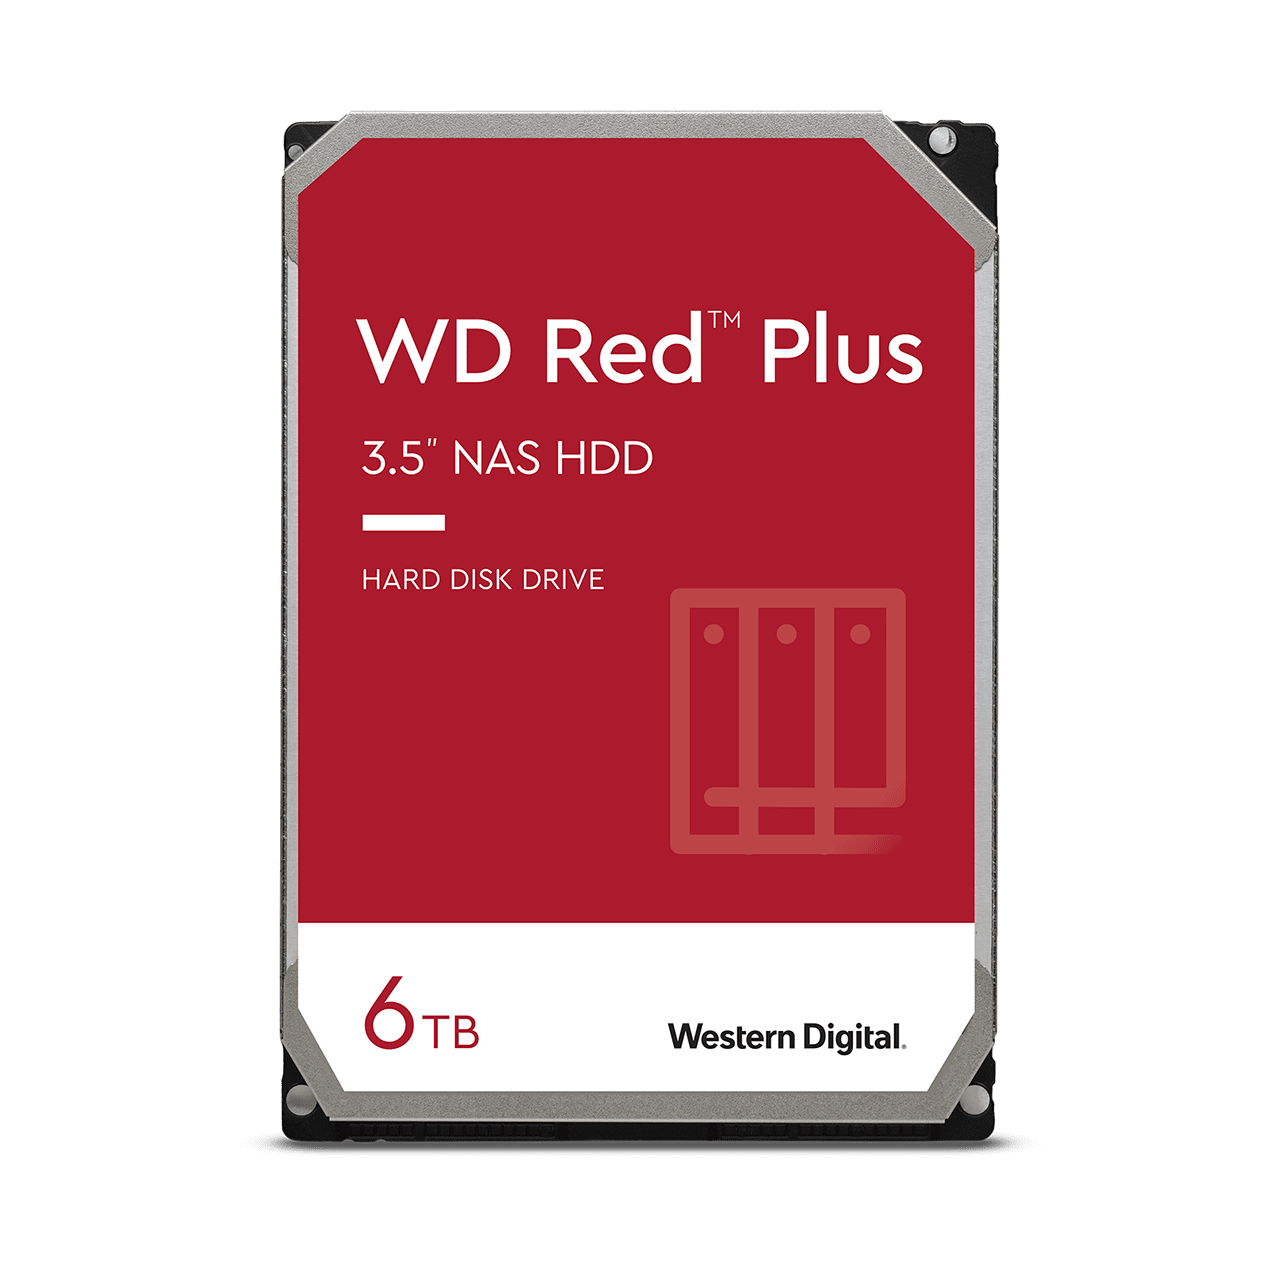 wd-red-plus-sata-3-5-hdd-6tb.thumb.1280.1280